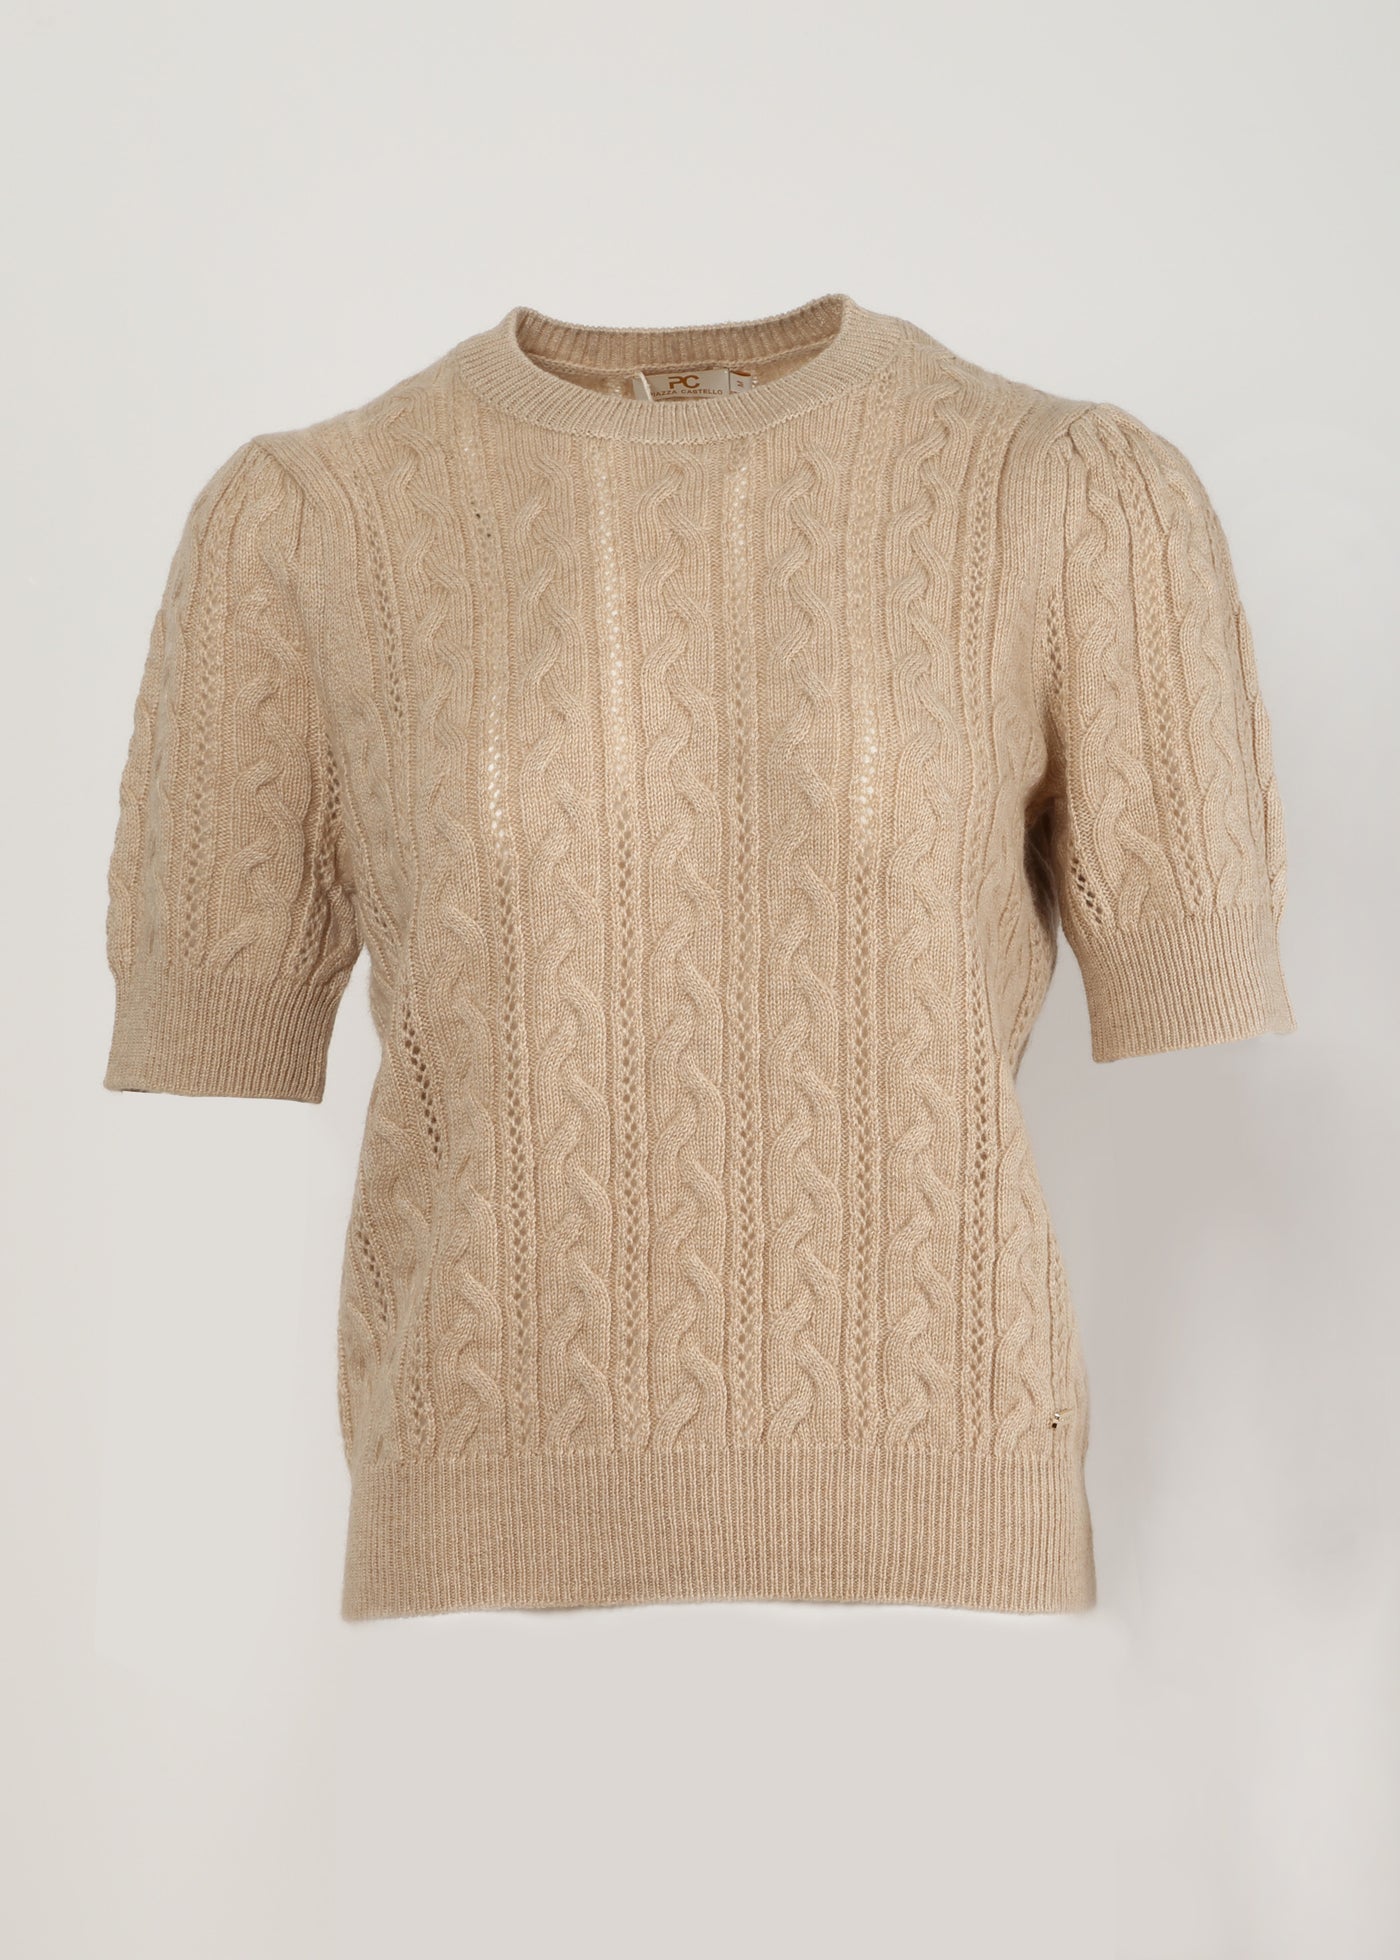 Women's Short Sleeve Round Neck Cashmere Pullover